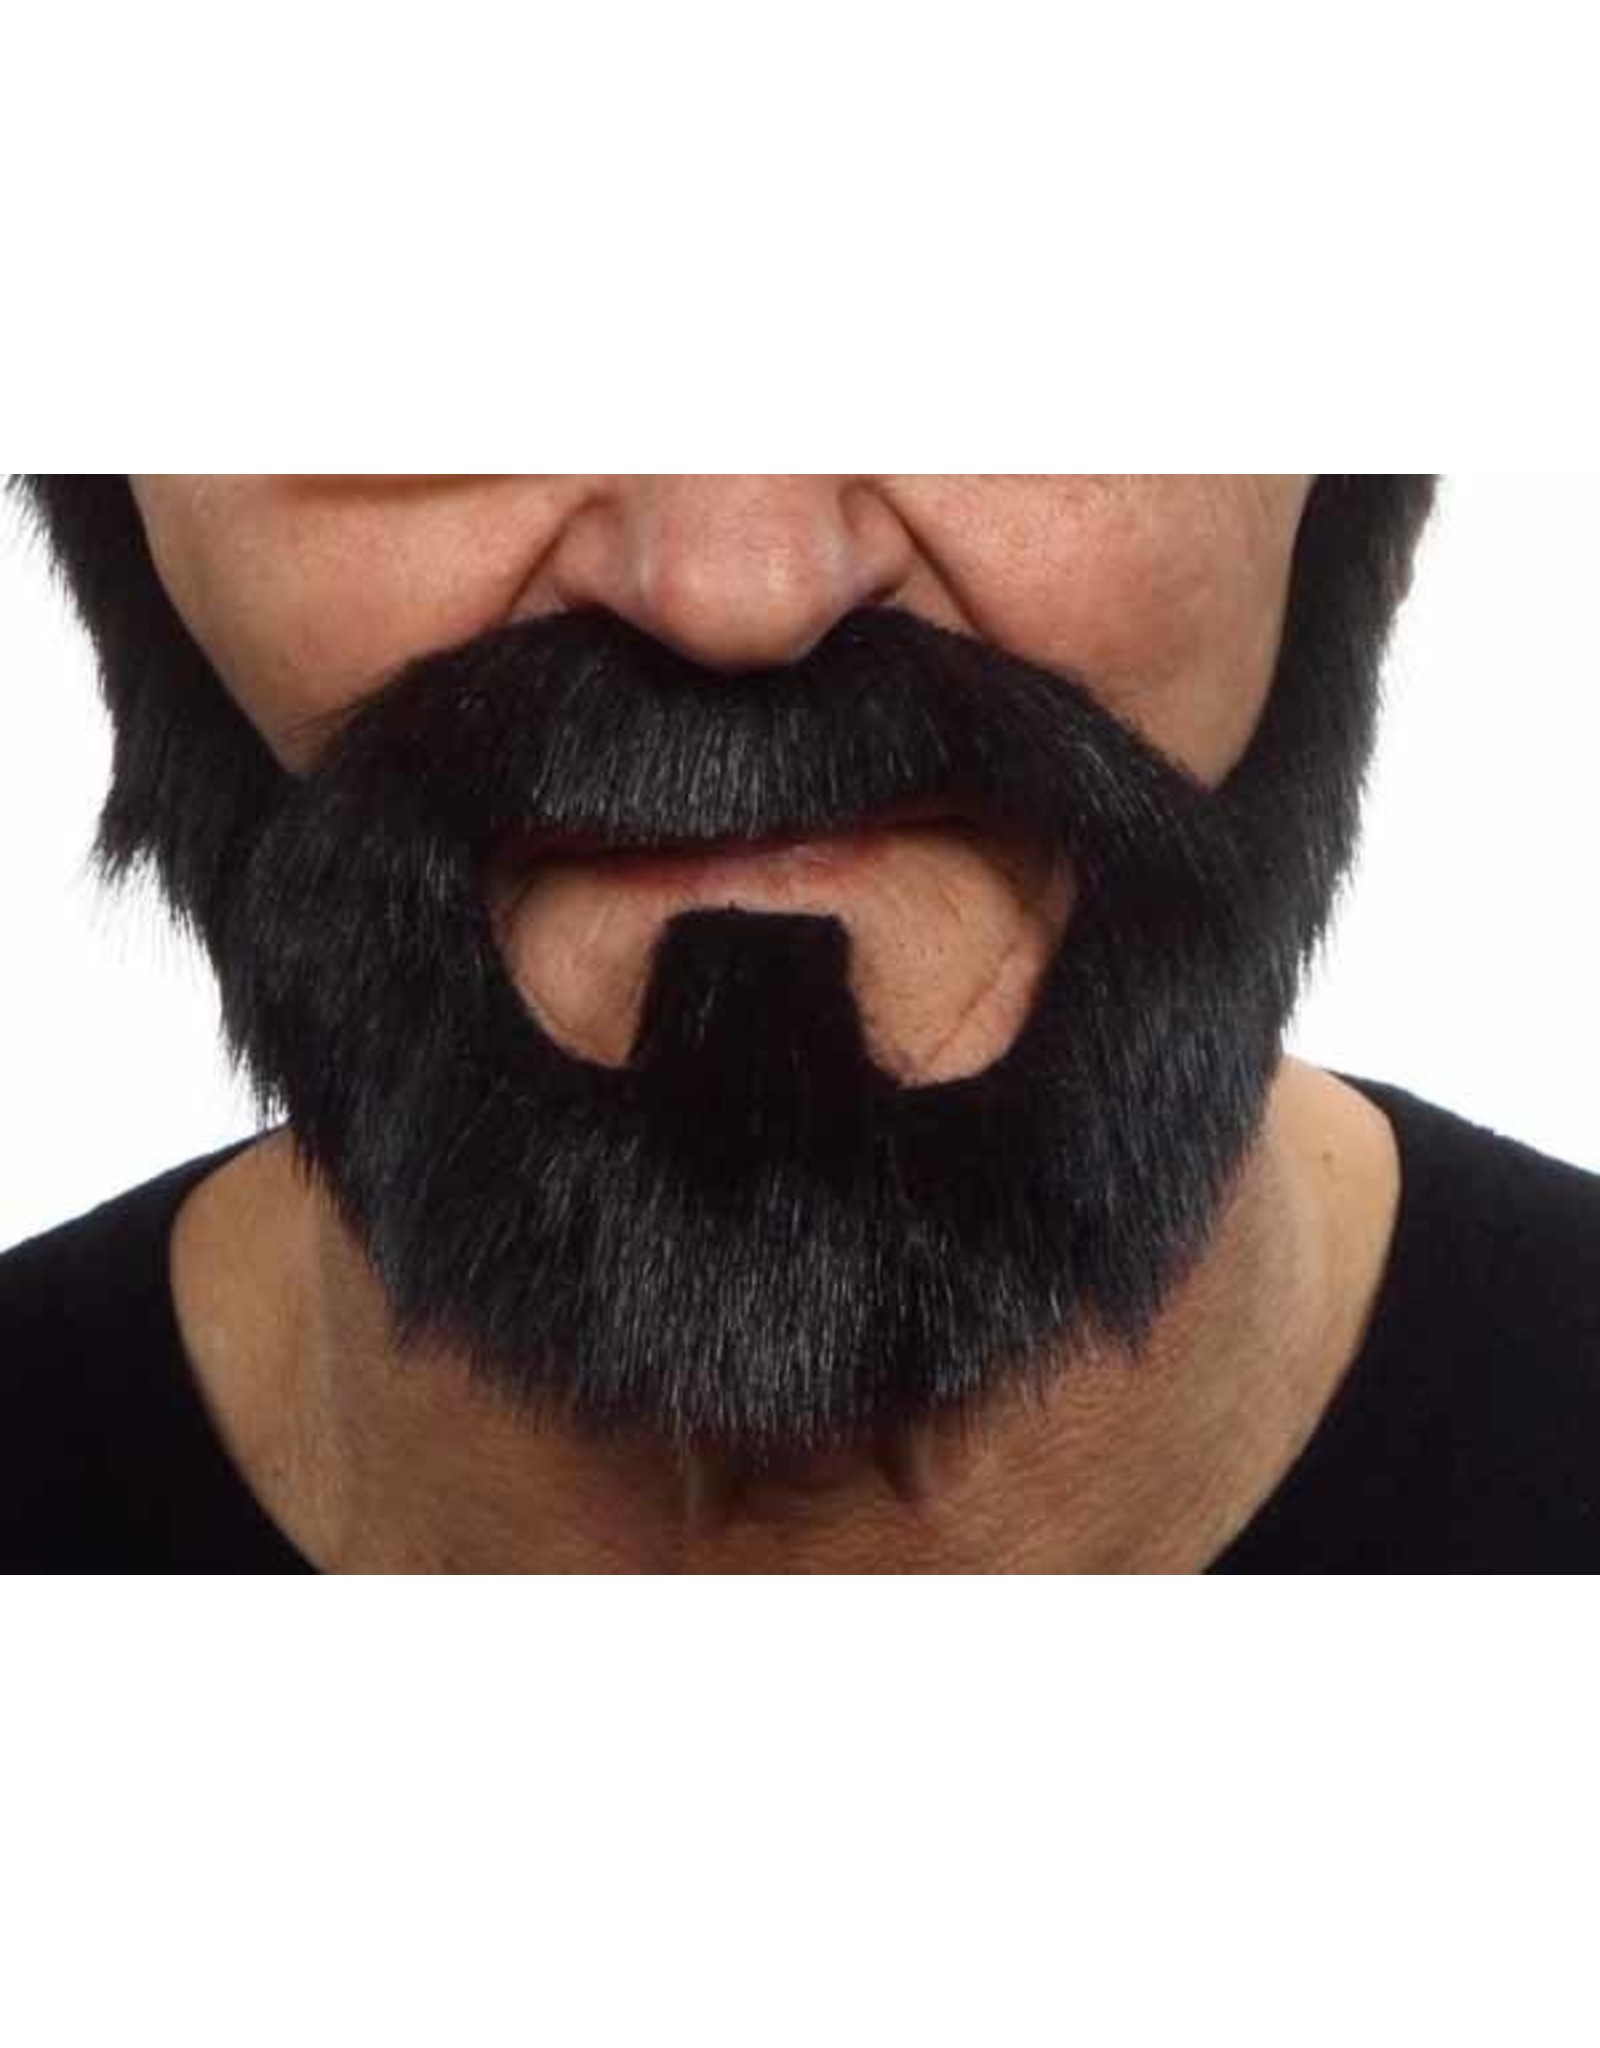 European Moustaches Moustache Beard 20cm x 16cm